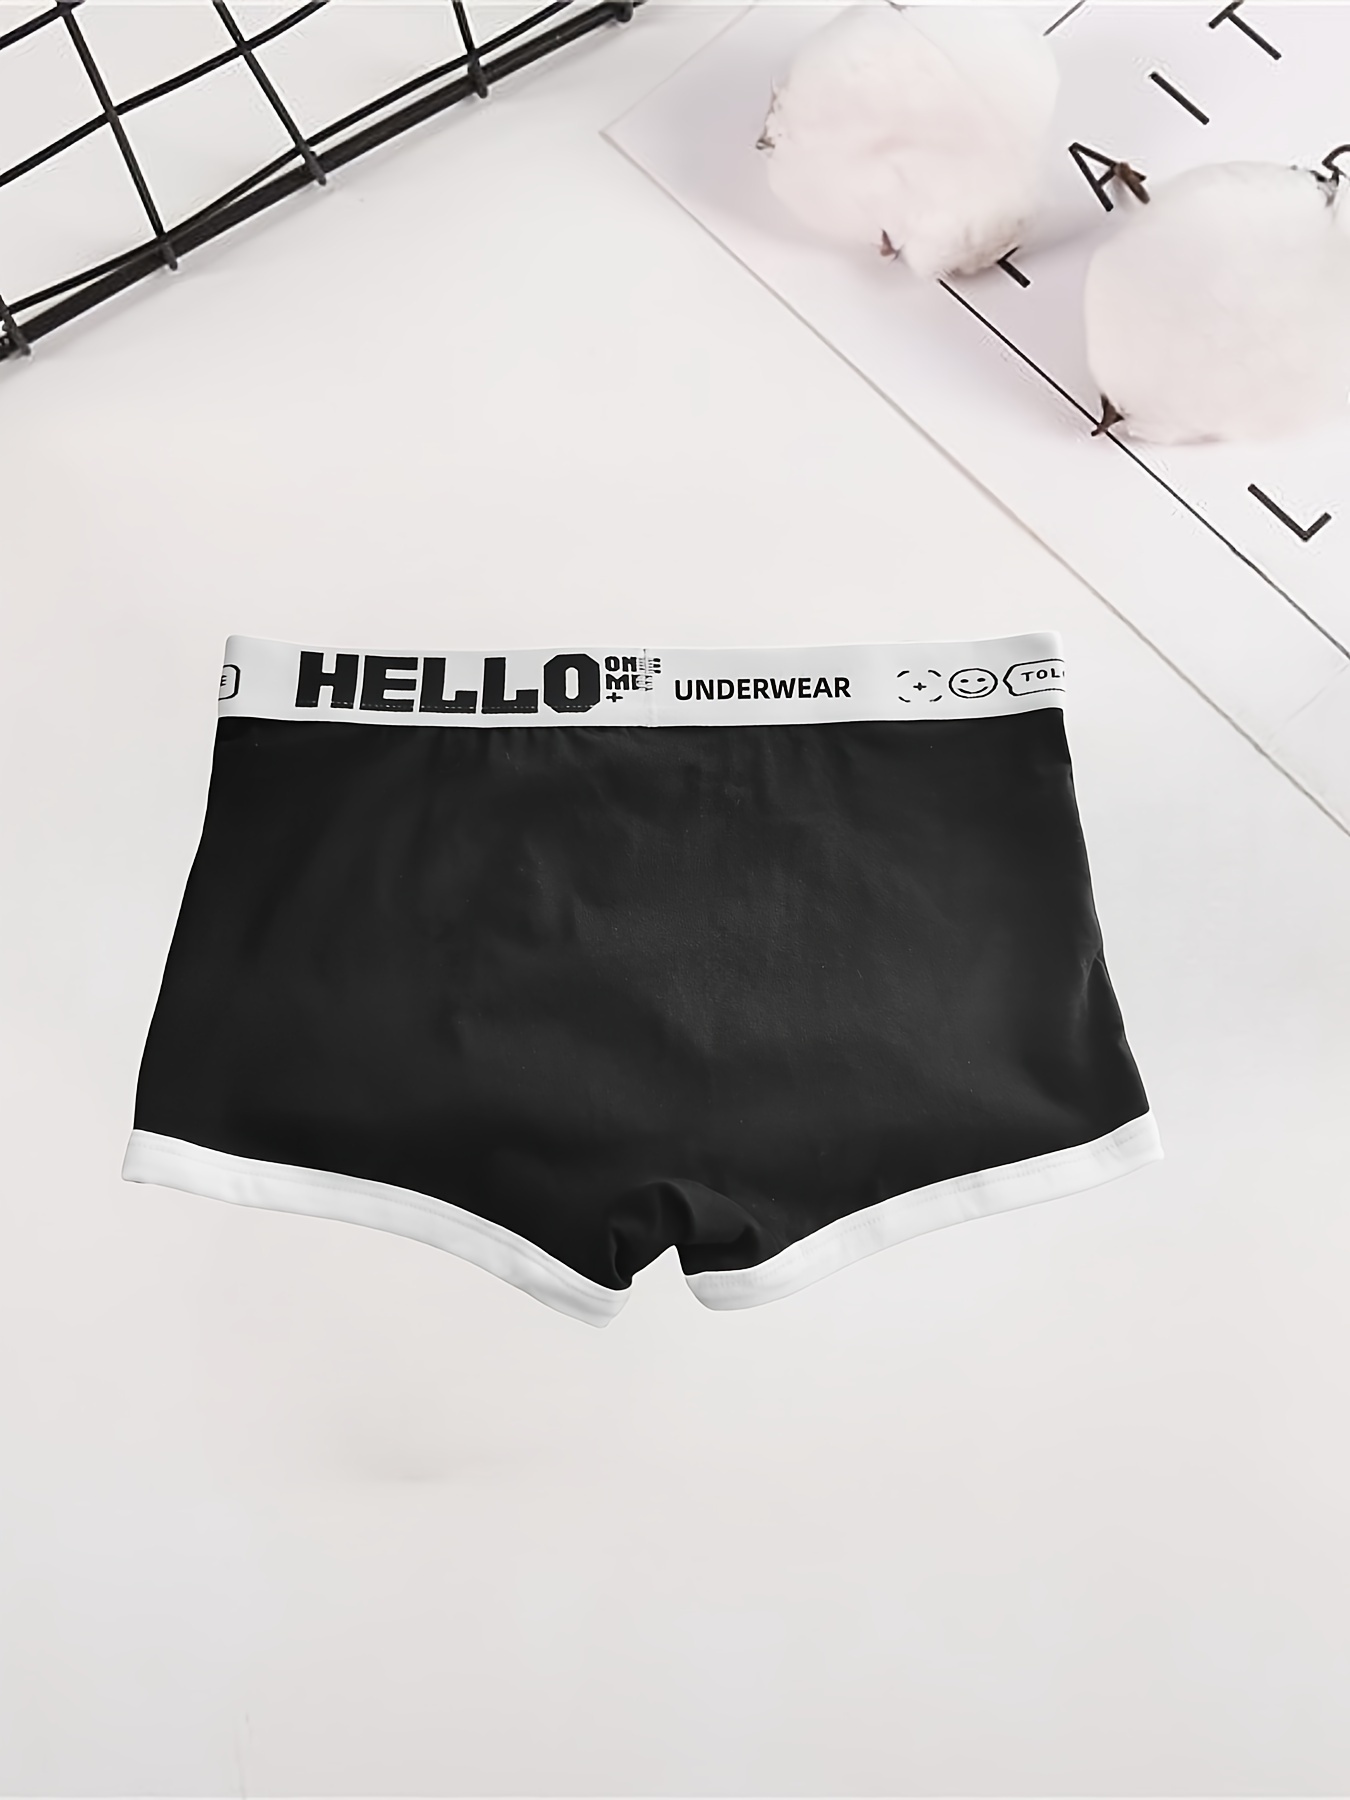 Plus Size Men's 'hello' Print Fashion Boxer Briefs - Temu Canada